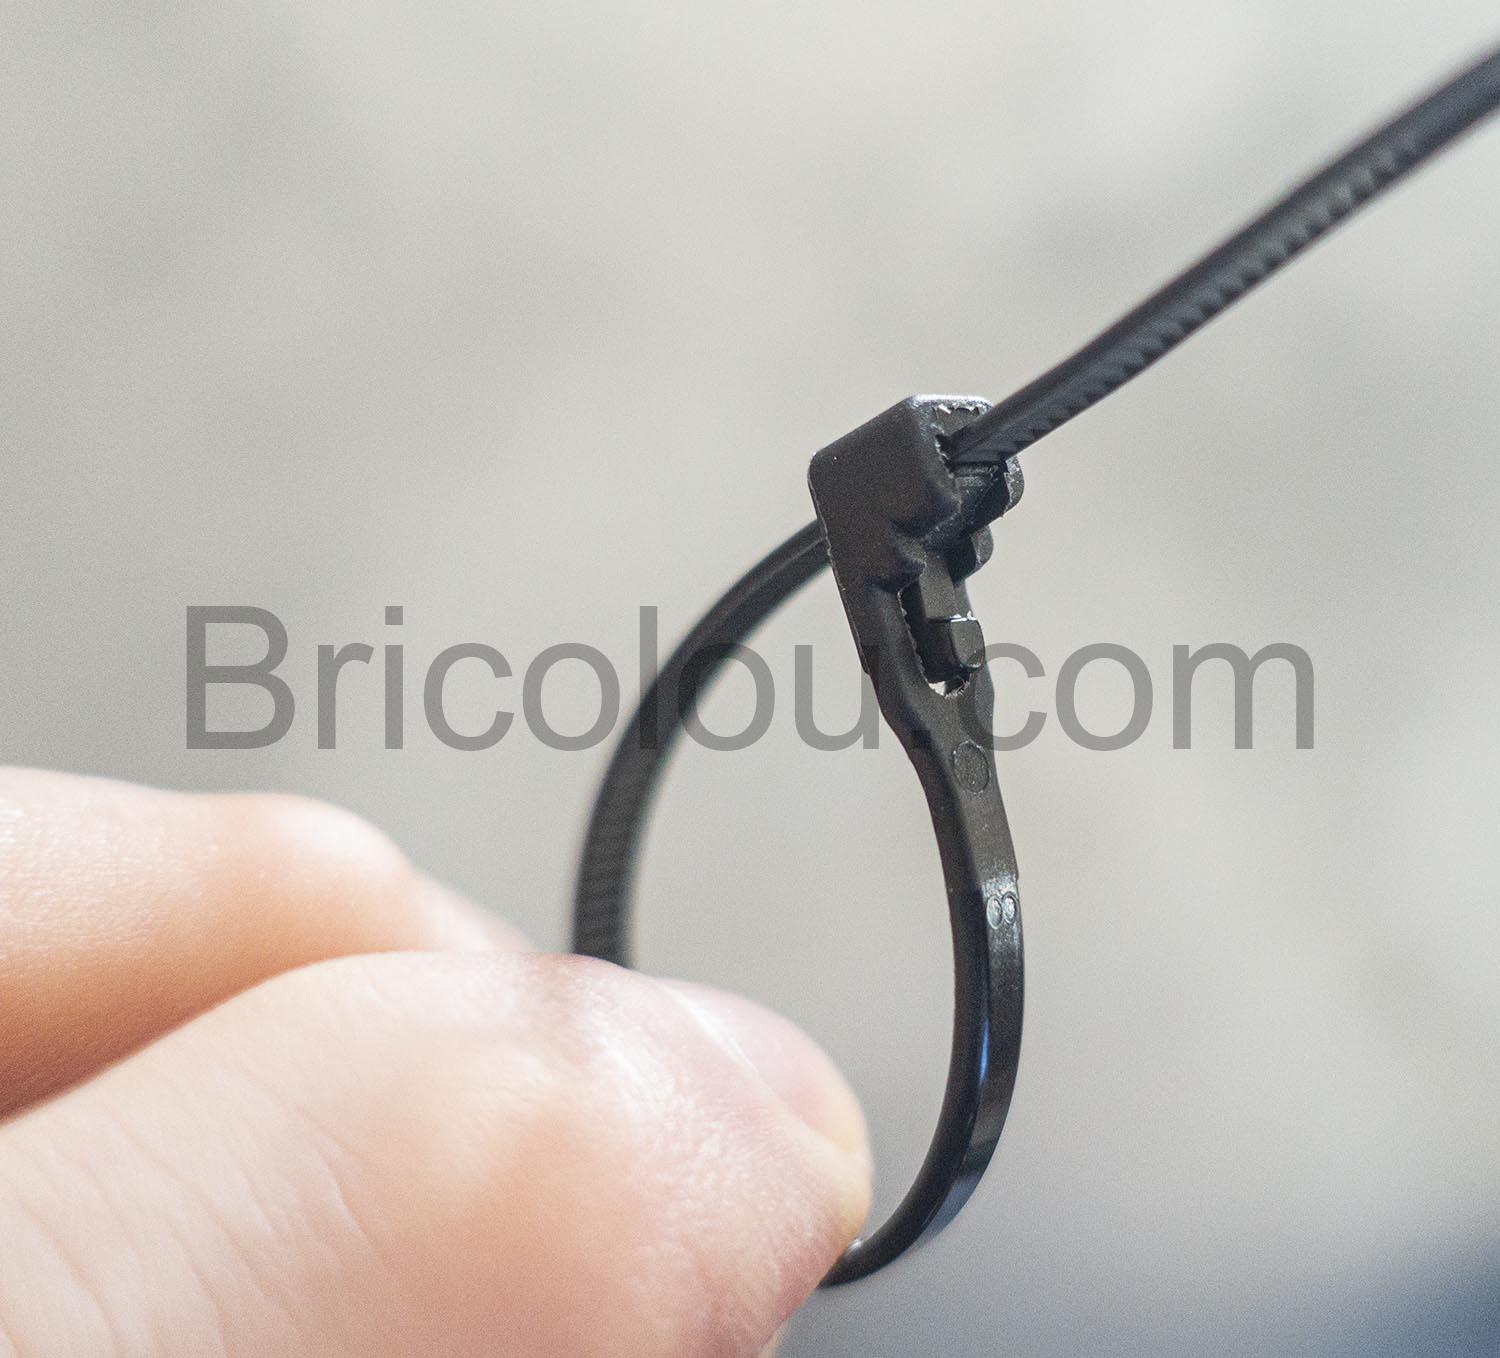 Serre-Câble Reutilisable Set de 10 Colliers de Serrage pour Cables